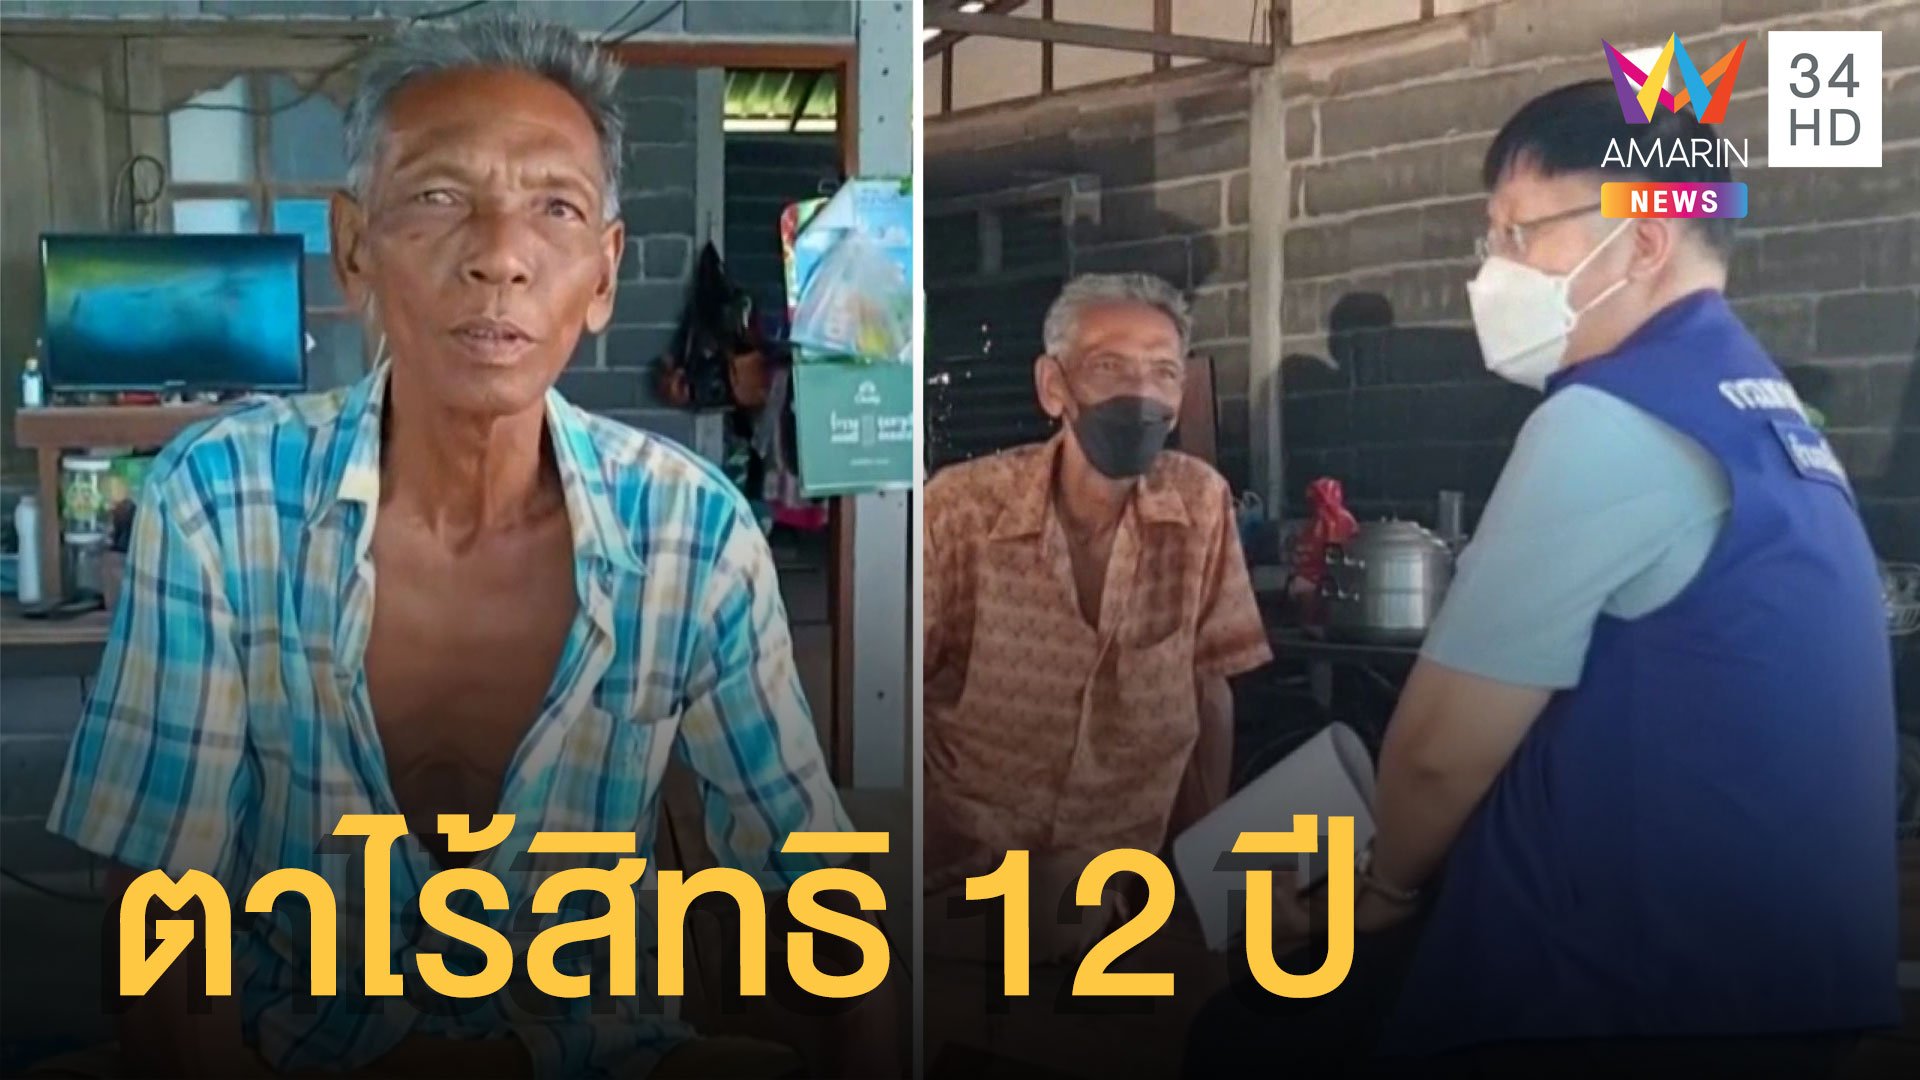 สุดช้ำ ตาถูกแจ้งตาย 12 ปี ไม่มีแม้กระทั่งบัตรประชาชน | ข่าวเที่ยงอมรินทร์ | 25 ก.ค. 65 | AMARIN TVHD34